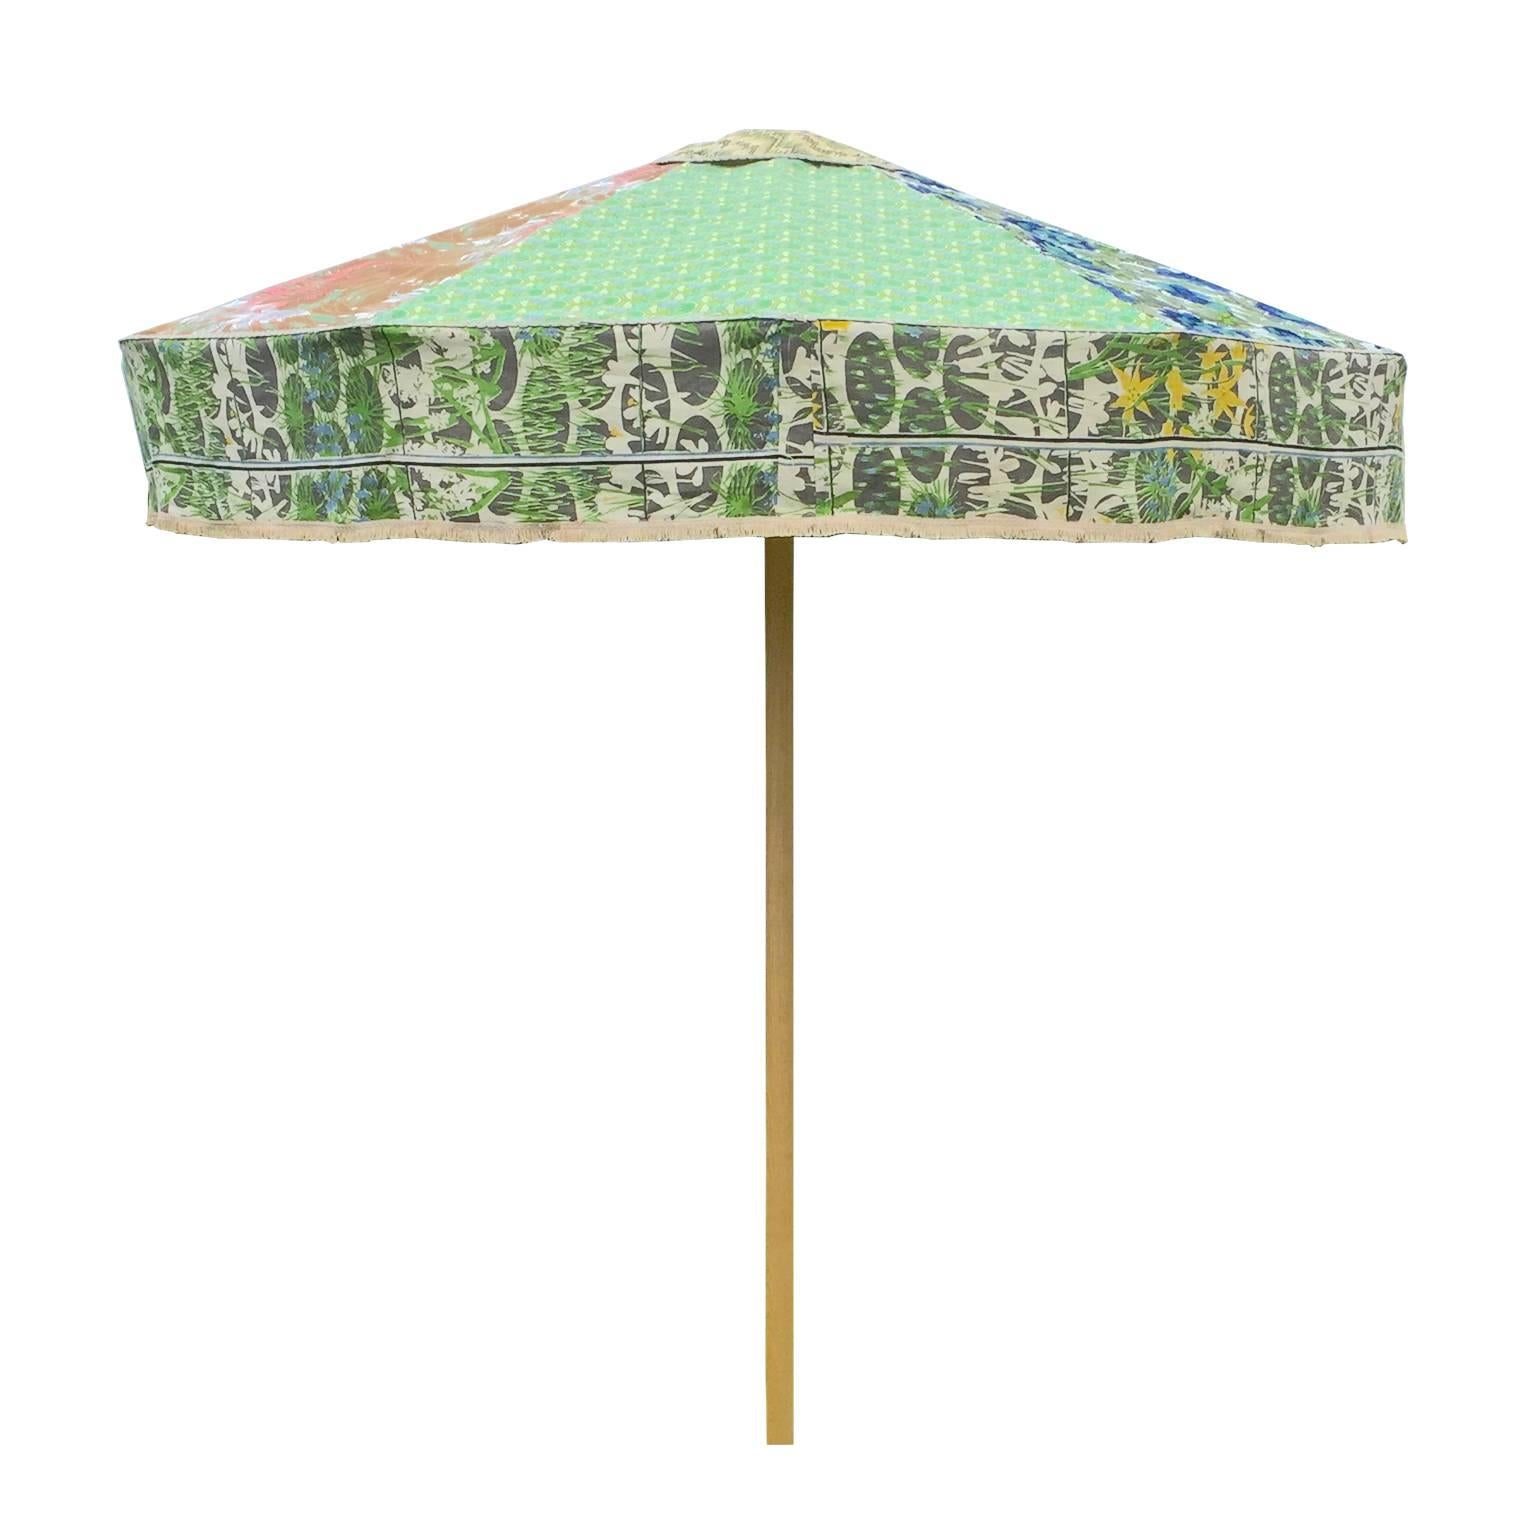 Designer Sun Umbrella Patio Parasol in Floral Geometric Vintage Fabrics Maximal